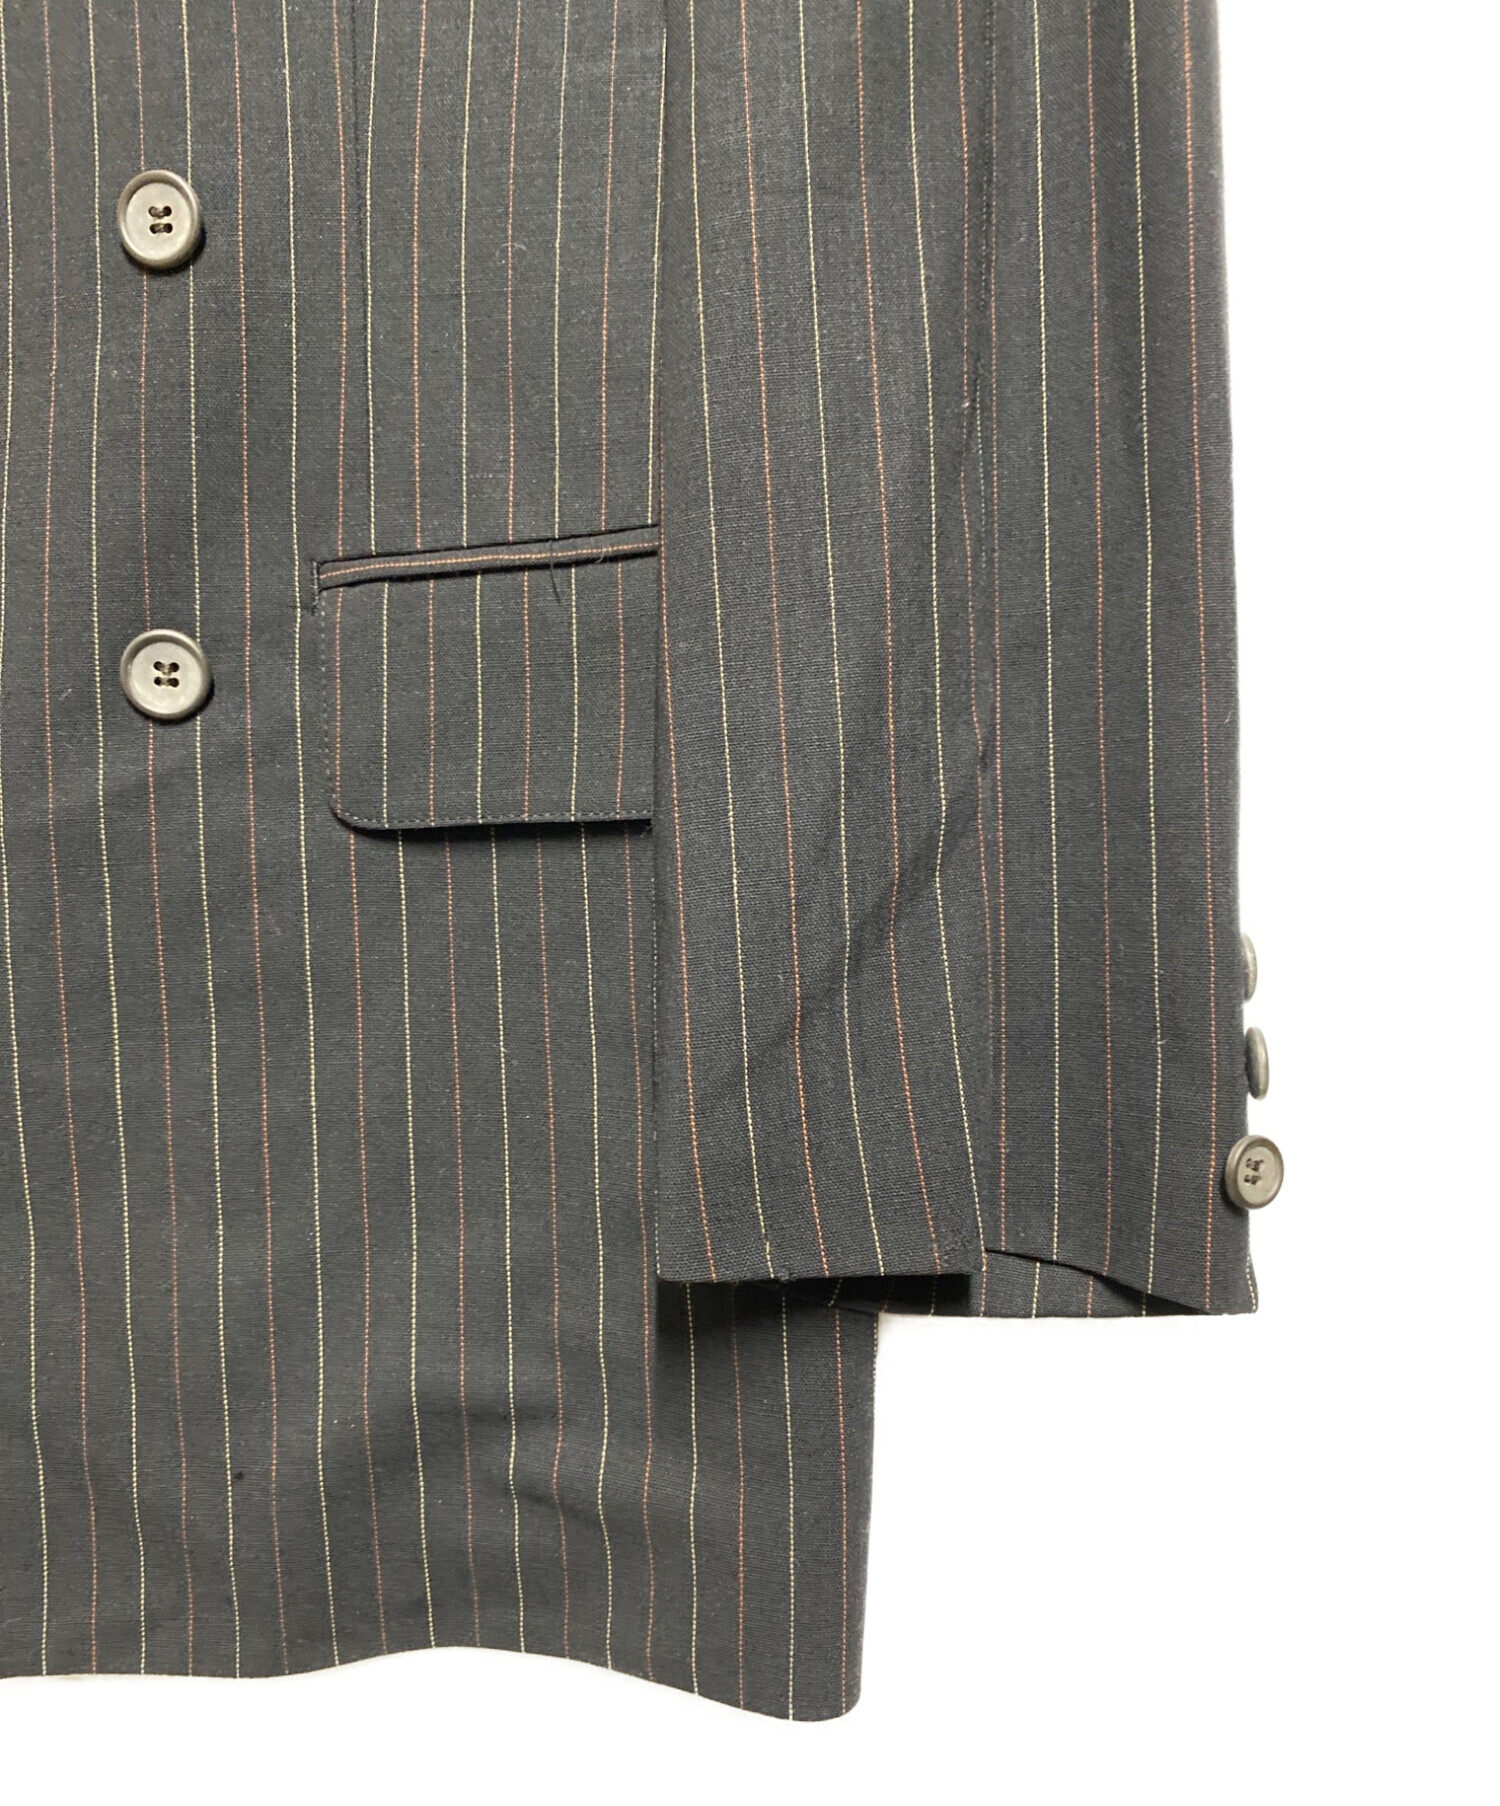 Jean Paul Gaultier HOMME ジャンポールゴルチエ オム ストライプピークドラペルダブルブレステッドジャケット トラウザー スラックスパンツ テーラードジャケット セットアップ 560-5775センチ裾幅